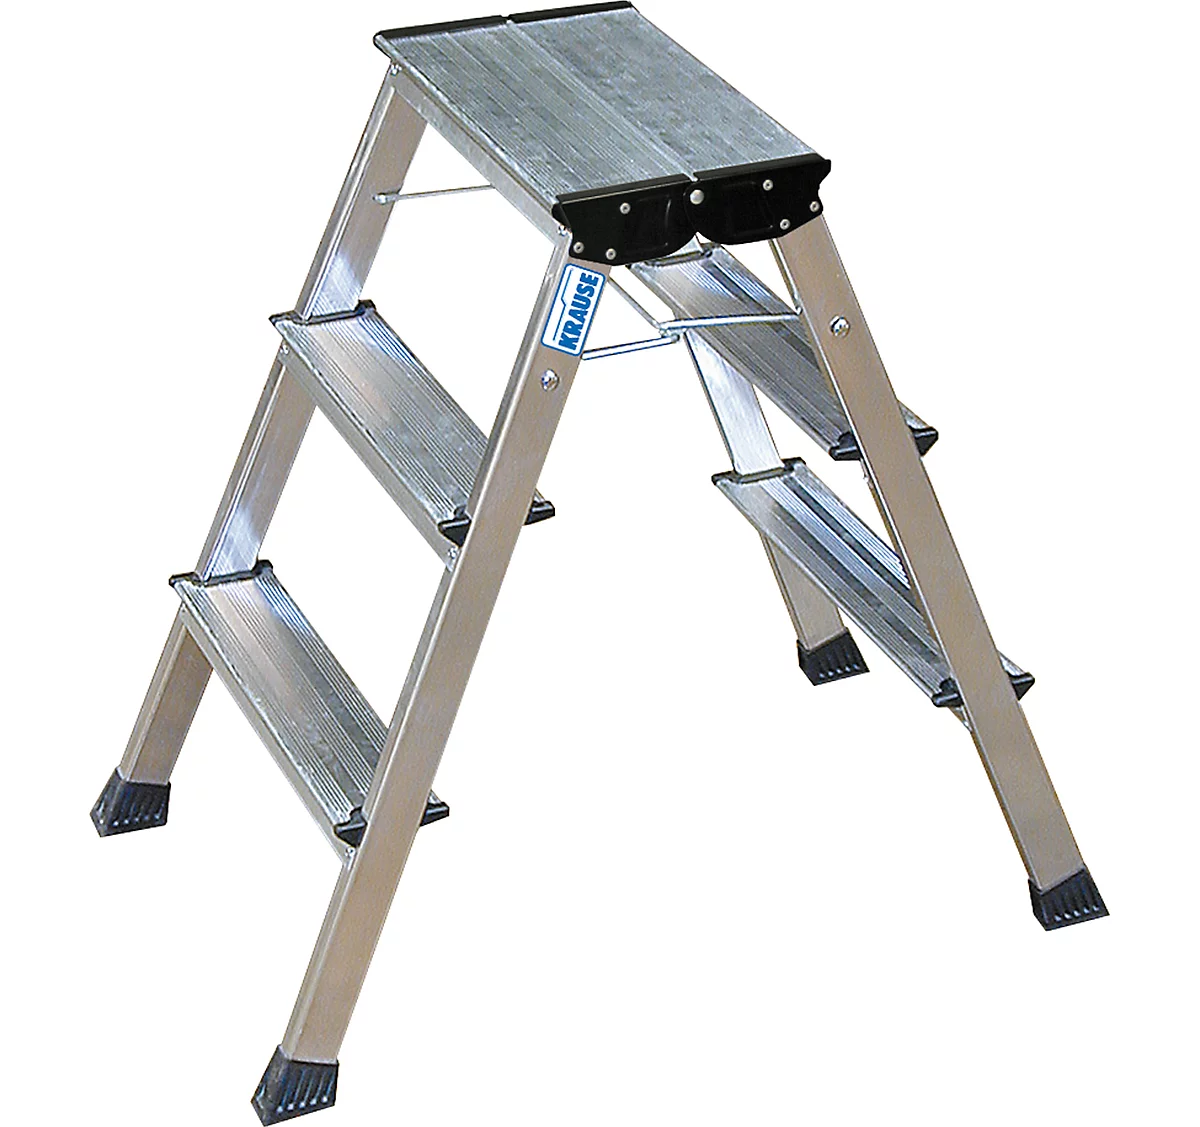 Escalerilla plegable doble Rolly, 2 x 3 escalones, color aluminio